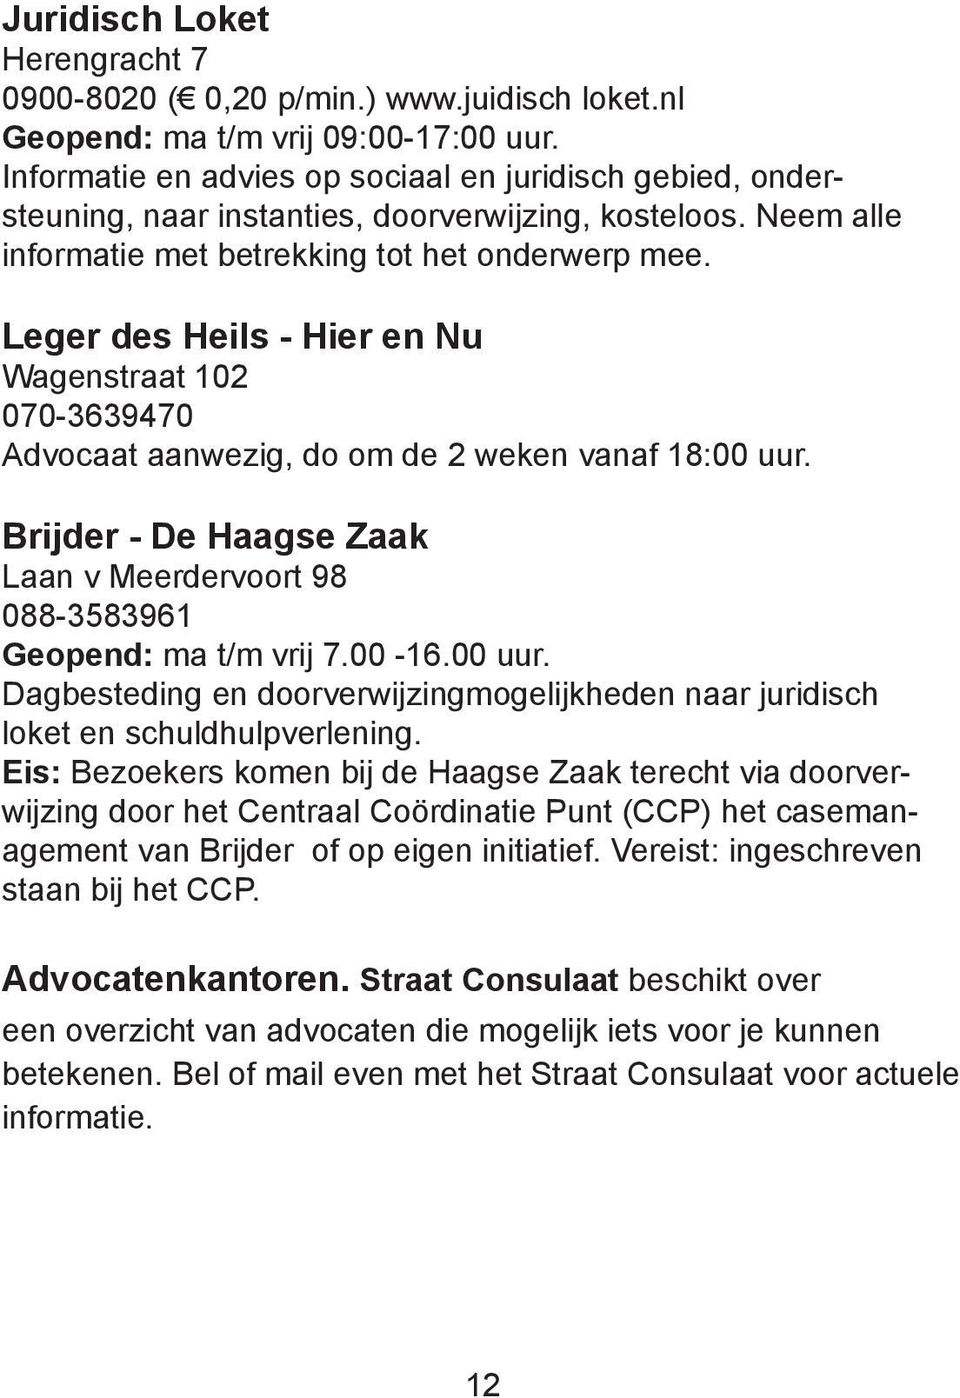 Leger des Heils - Hier en Nu Wagenstraat 102 070-3639470 Advocaat aanwezig, do om de 2 weken vanaf 18:00 uur. Brijder - De Haagse Zaak Laan v Meerdervoort 98 088-3583961 Geopend: ma t/m vrij 7.00-16.